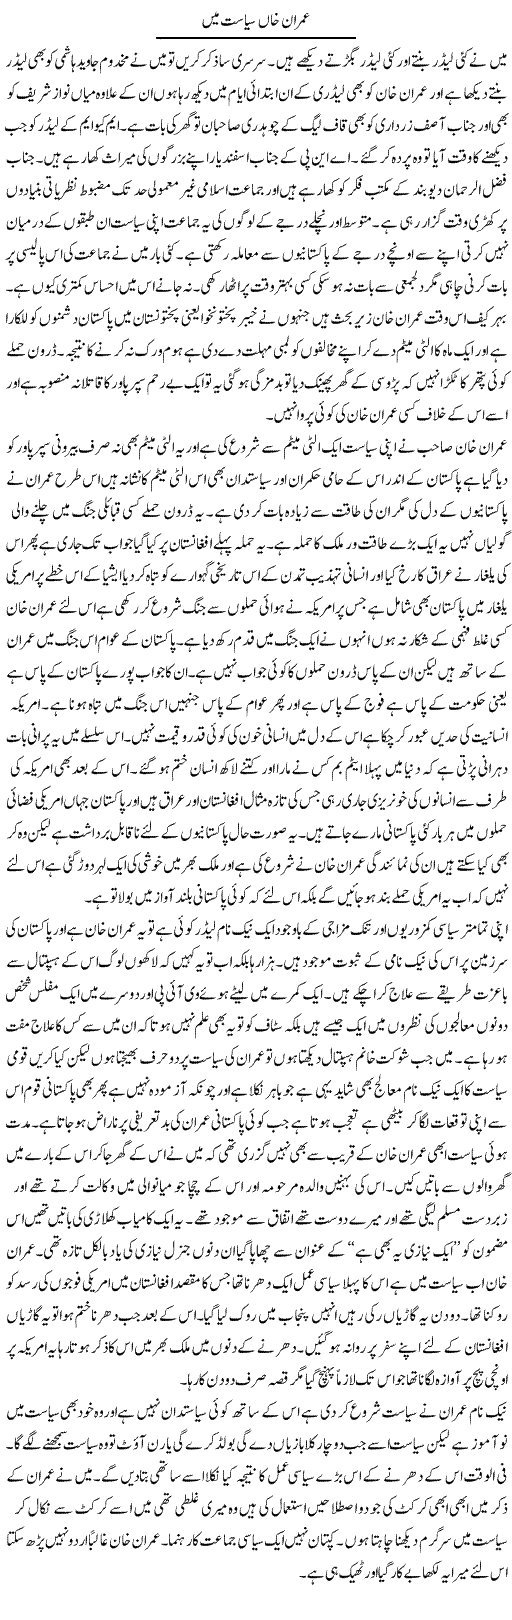 Imran Khan Express Column Abdul Qadir 27 April 2011